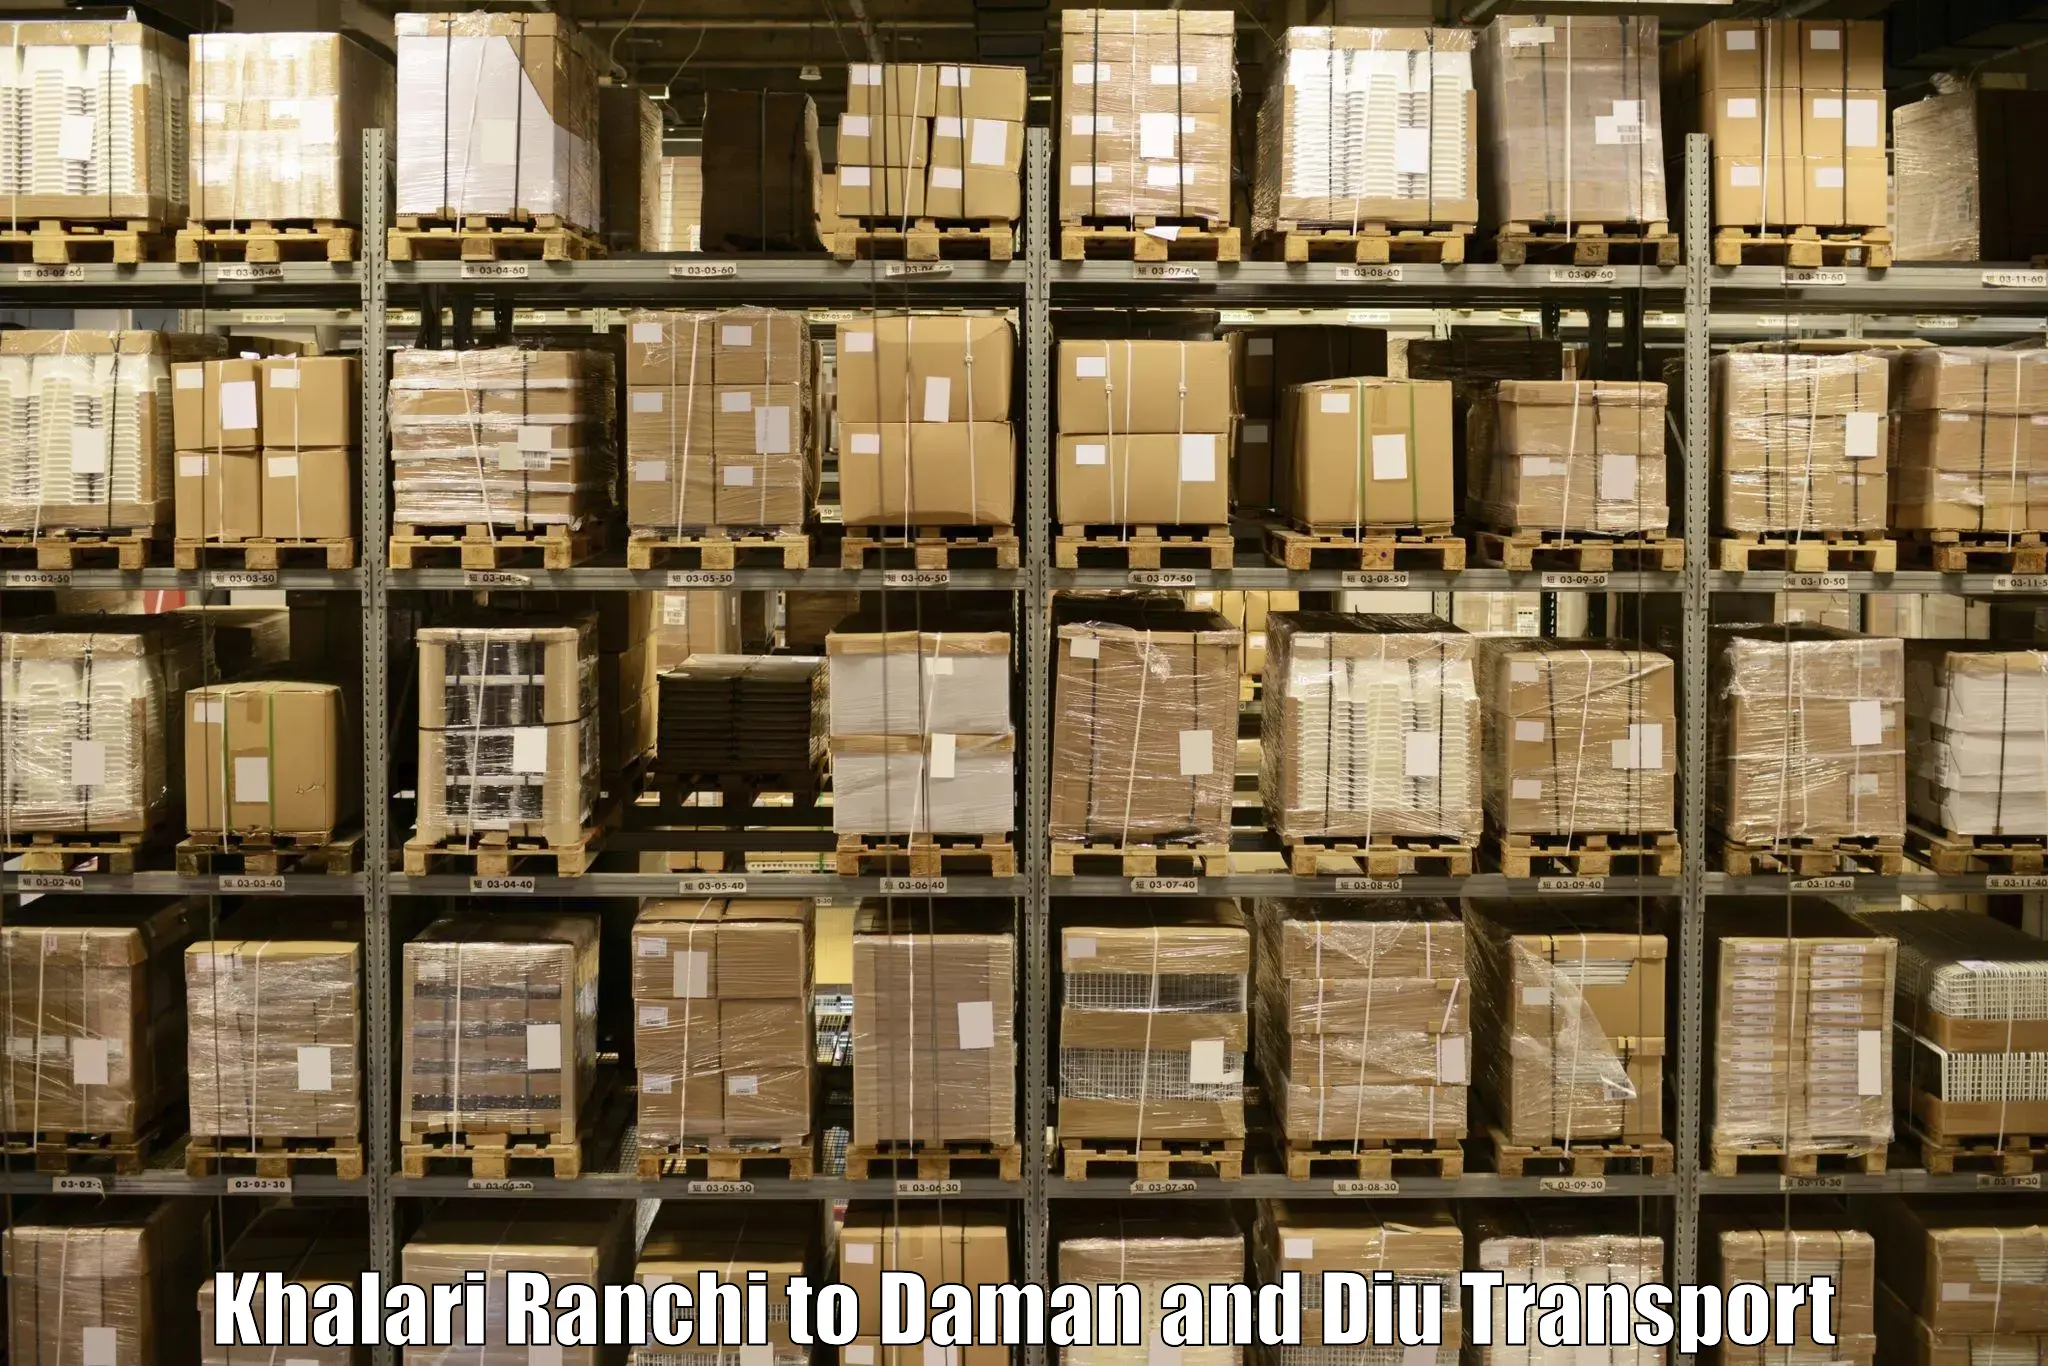 Lorry transport service Khalari Ranchi to Daman and Diu